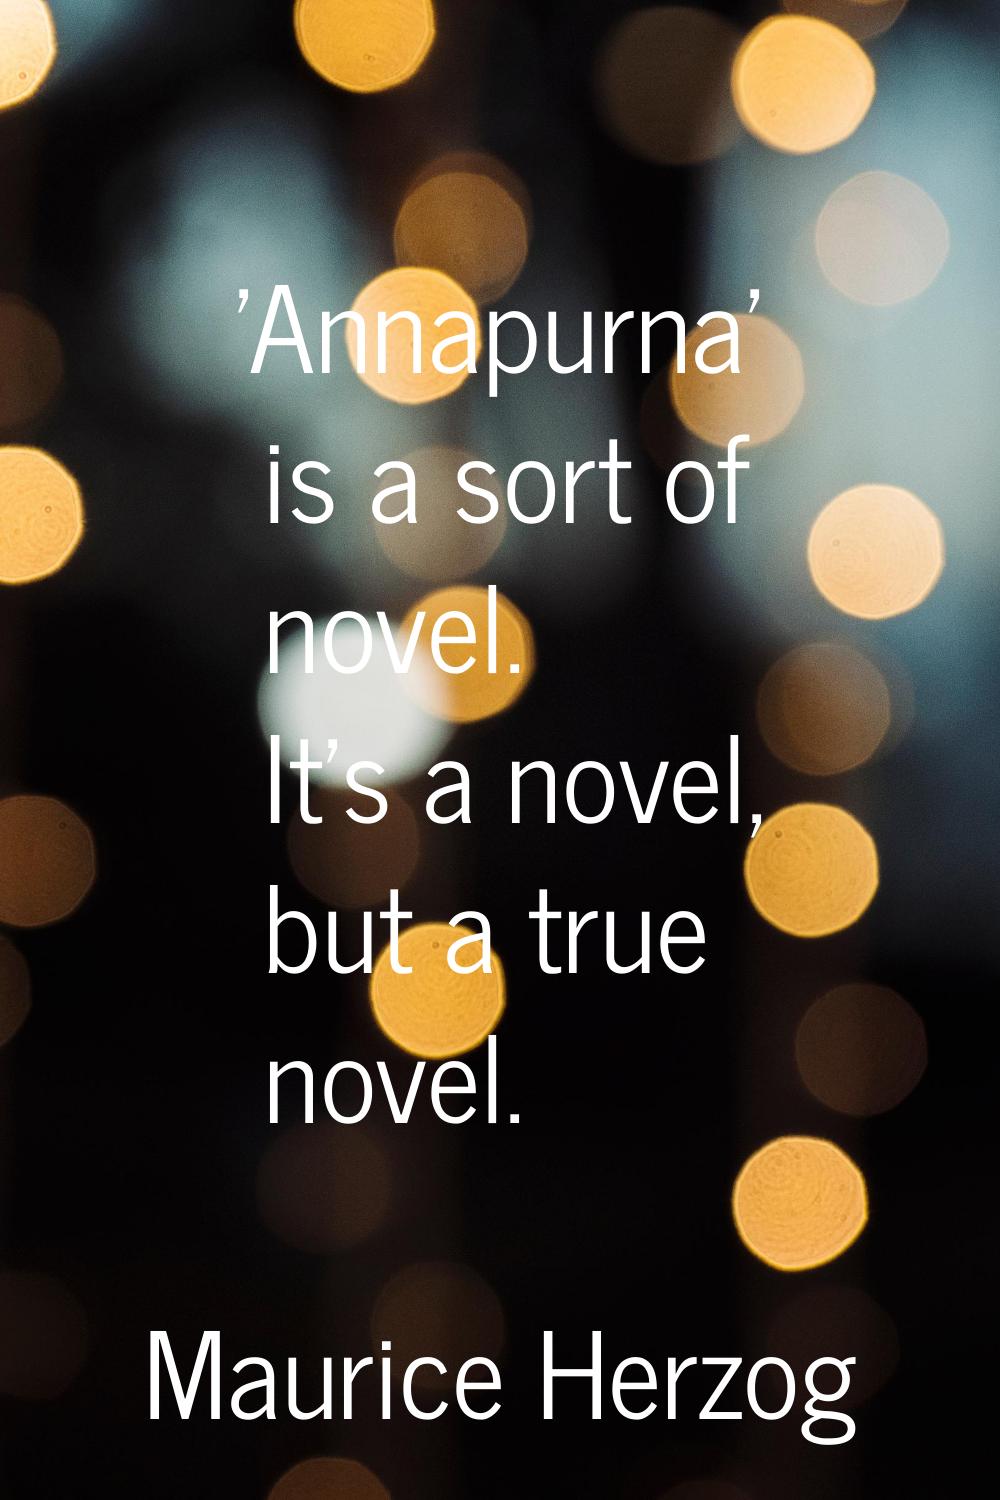 'Annapurna' is a sort of novel. It's a novel, but a true novel.